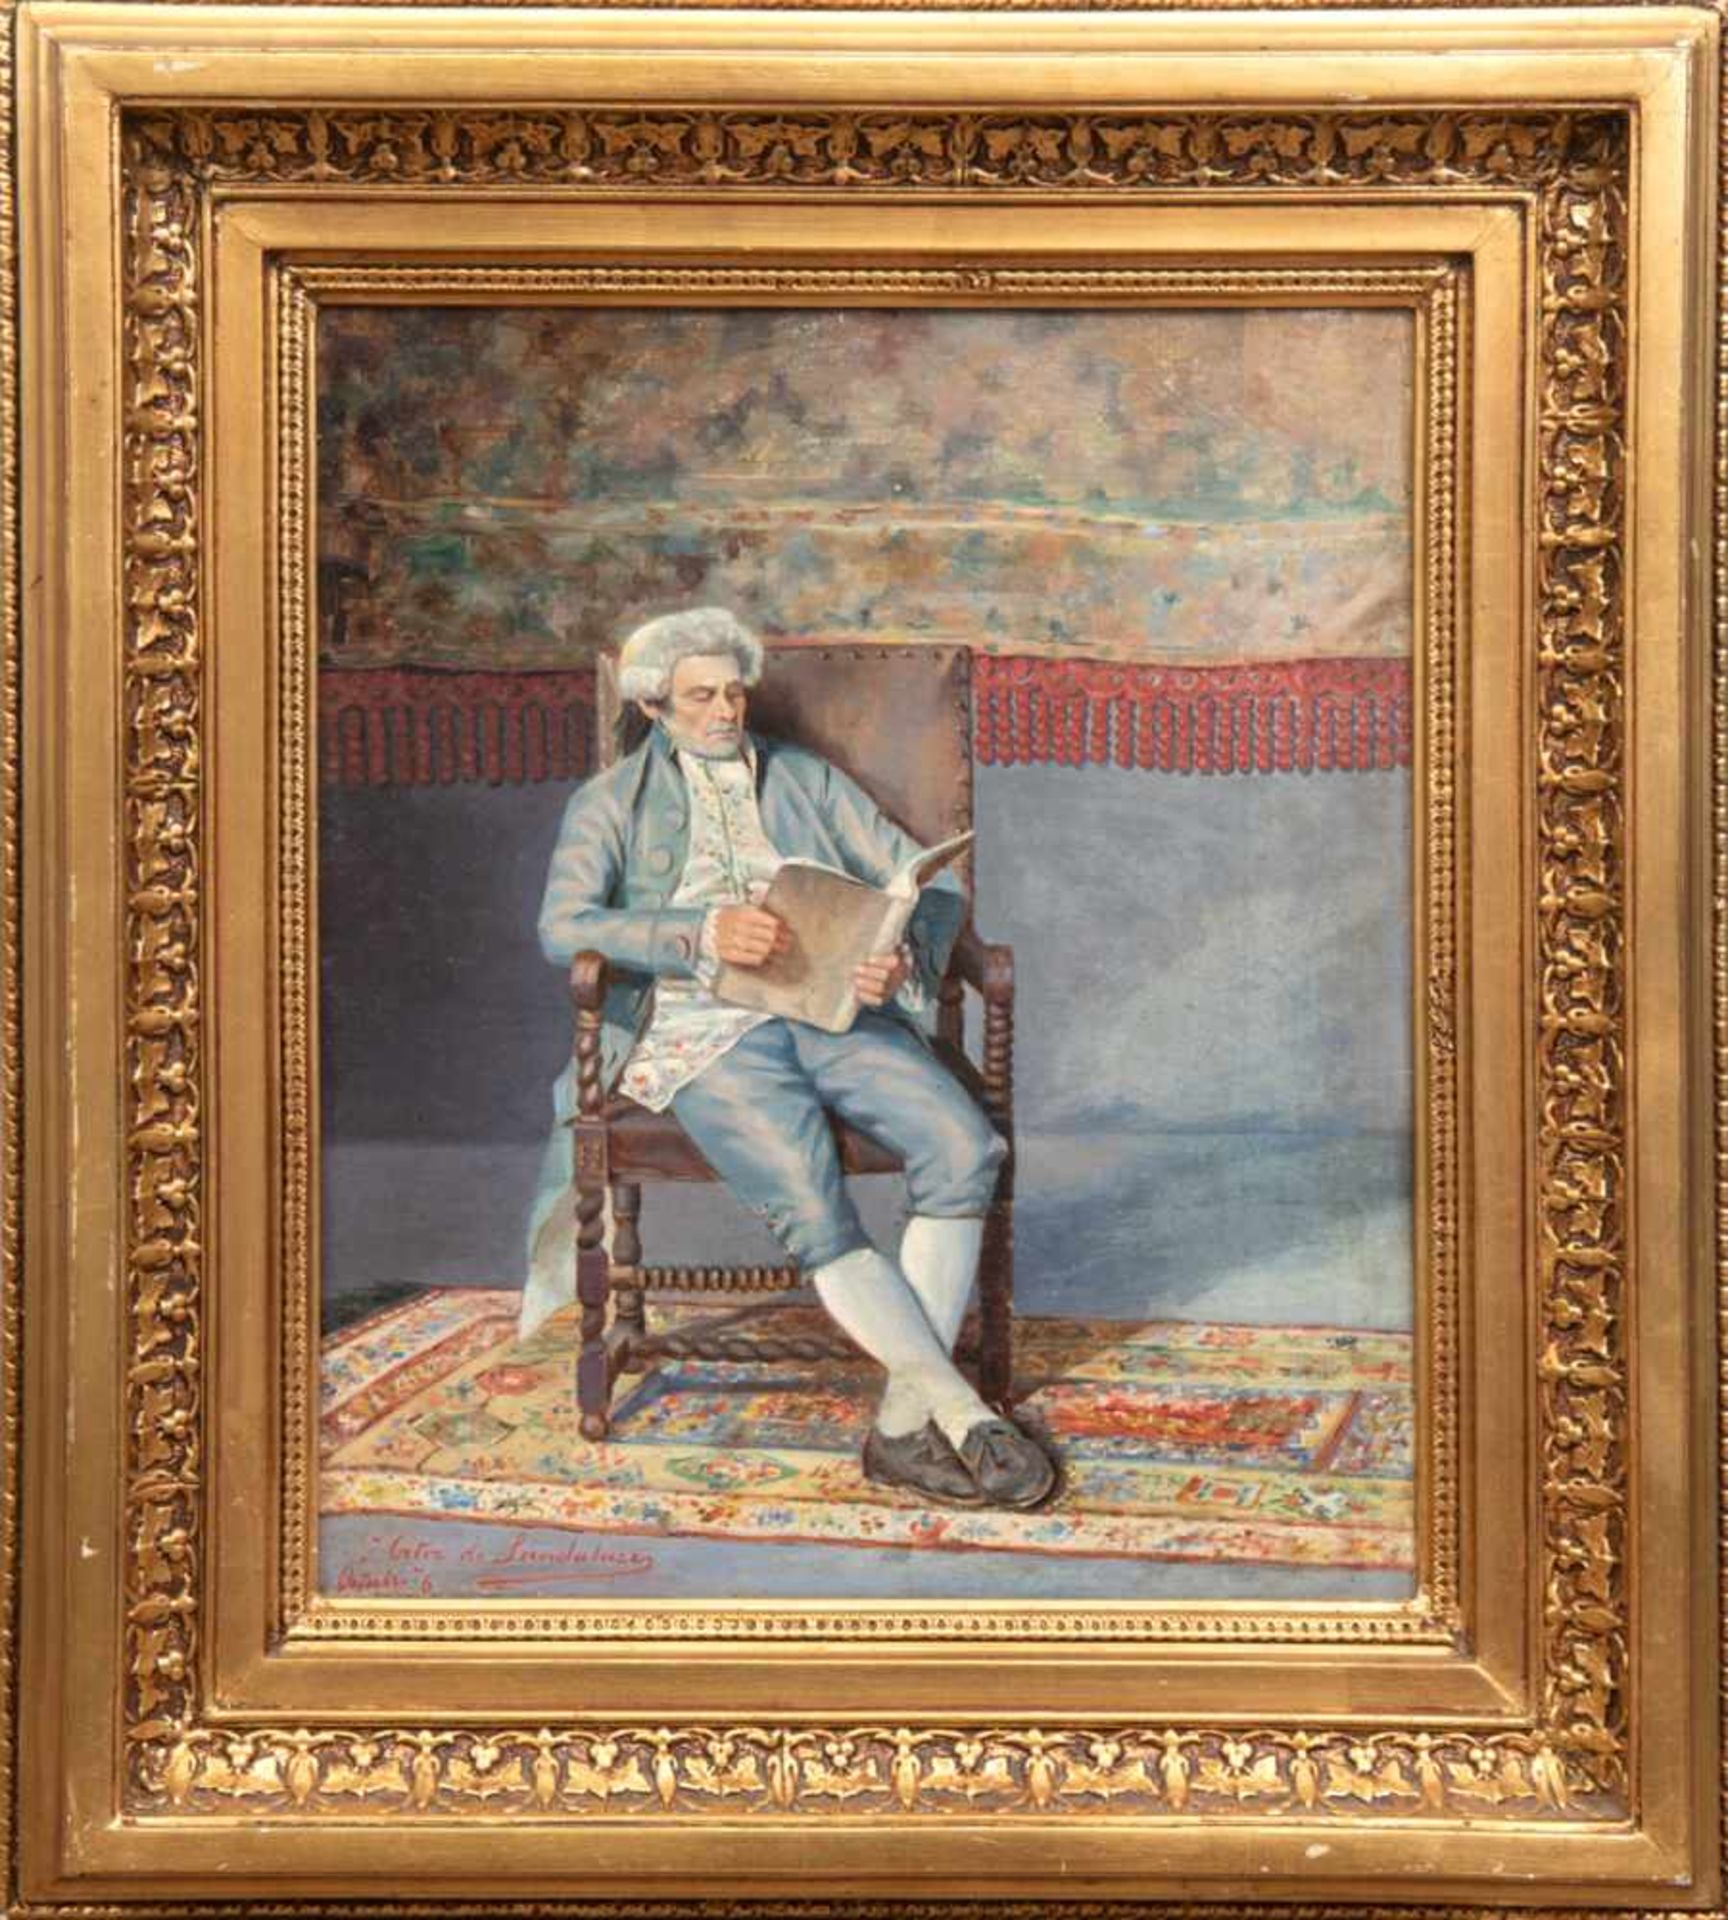 Chaves Ortiz, José Maria (1839-1903) "Torero", Öl/Lw., sign. u. dat. '76 u.l., 33x28 cm, Rahmen